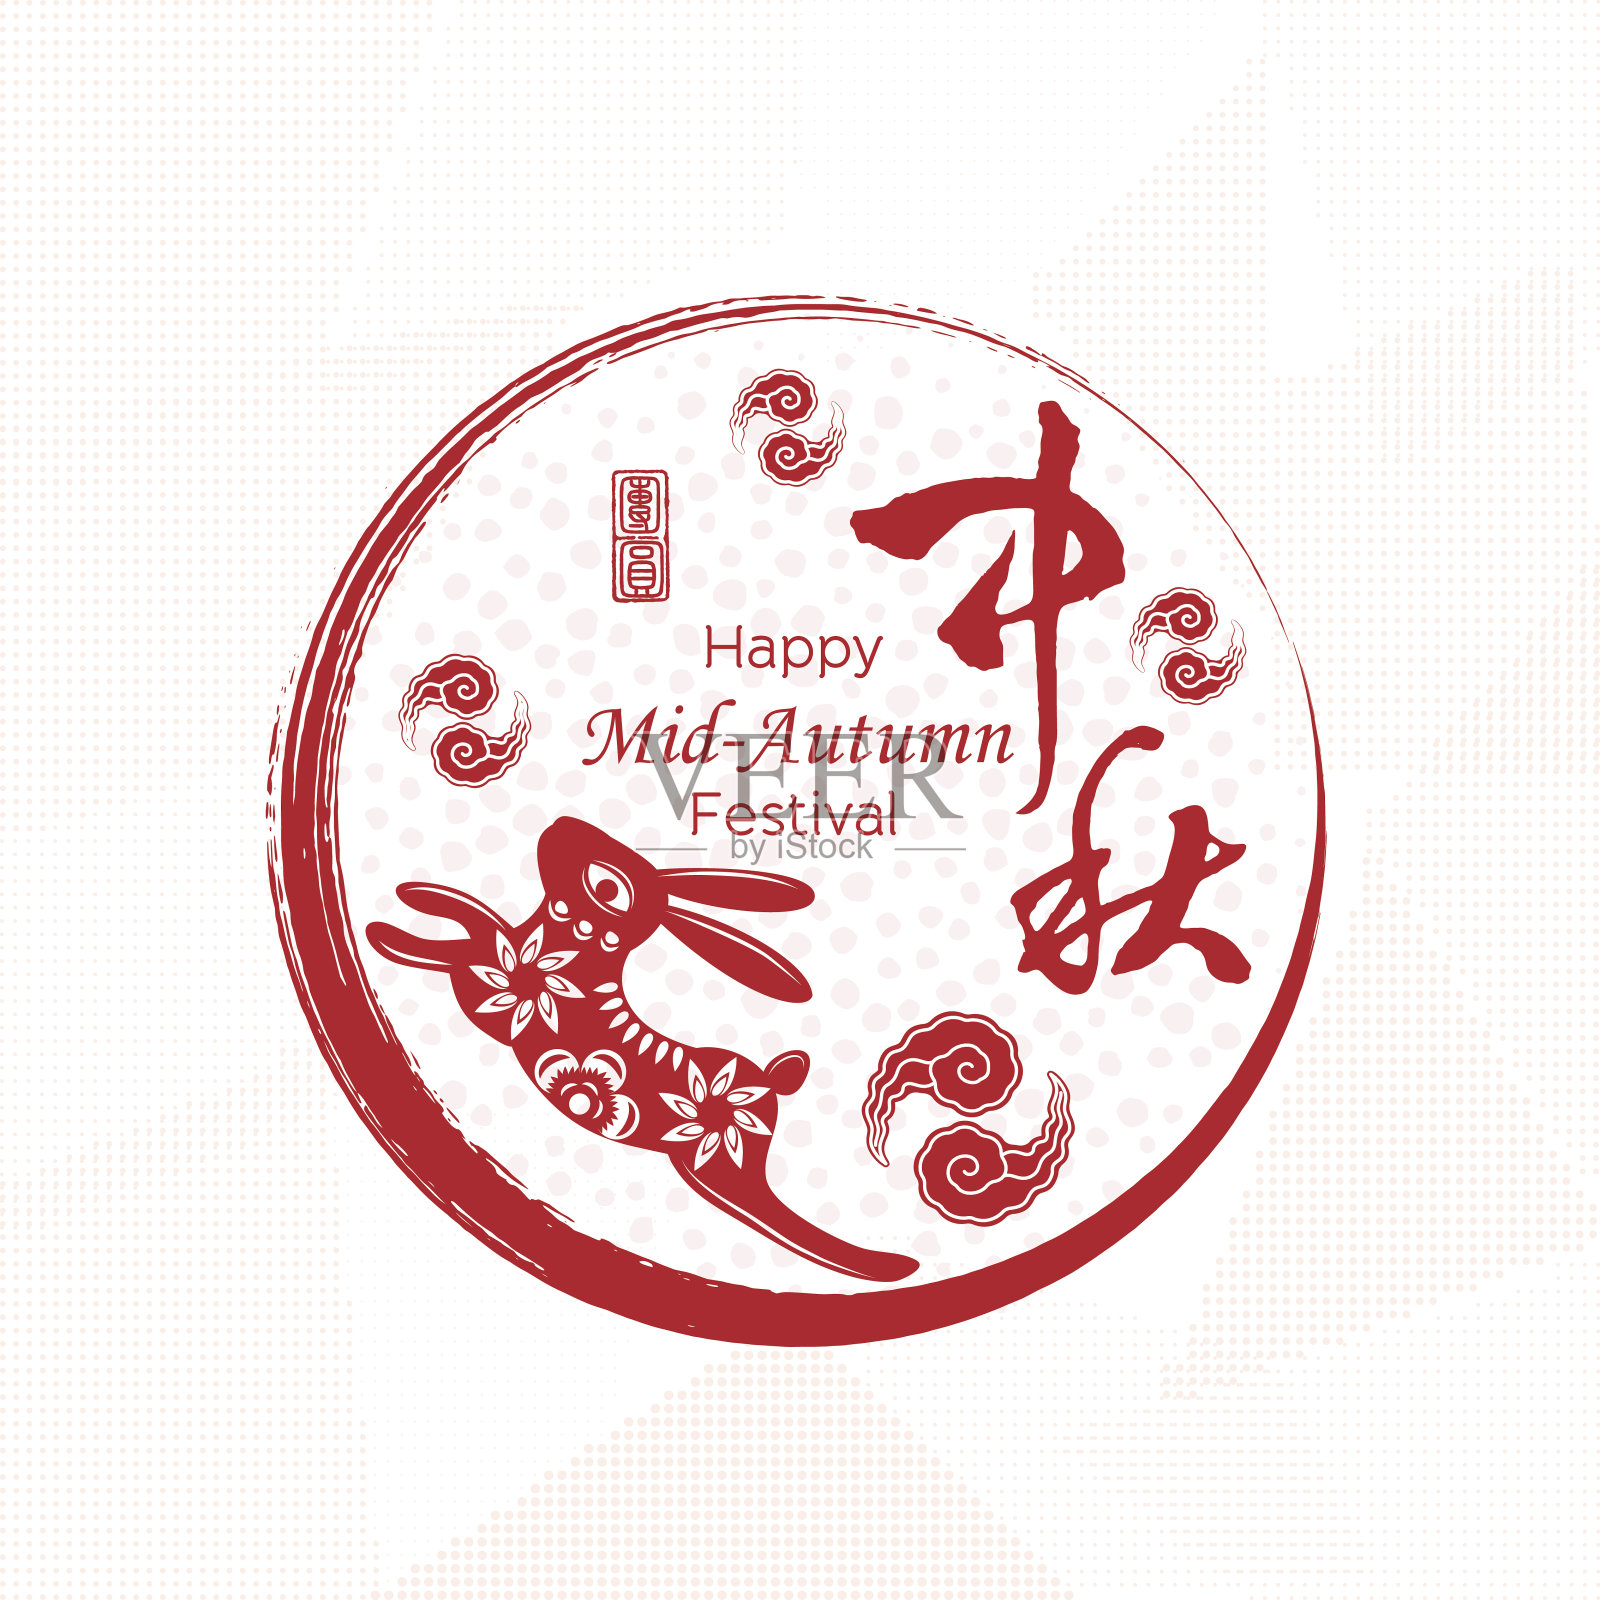 中国的中秋节，汉字“中秋”和印章意为“团圆”-中国红色剪纸设计设计模板素材